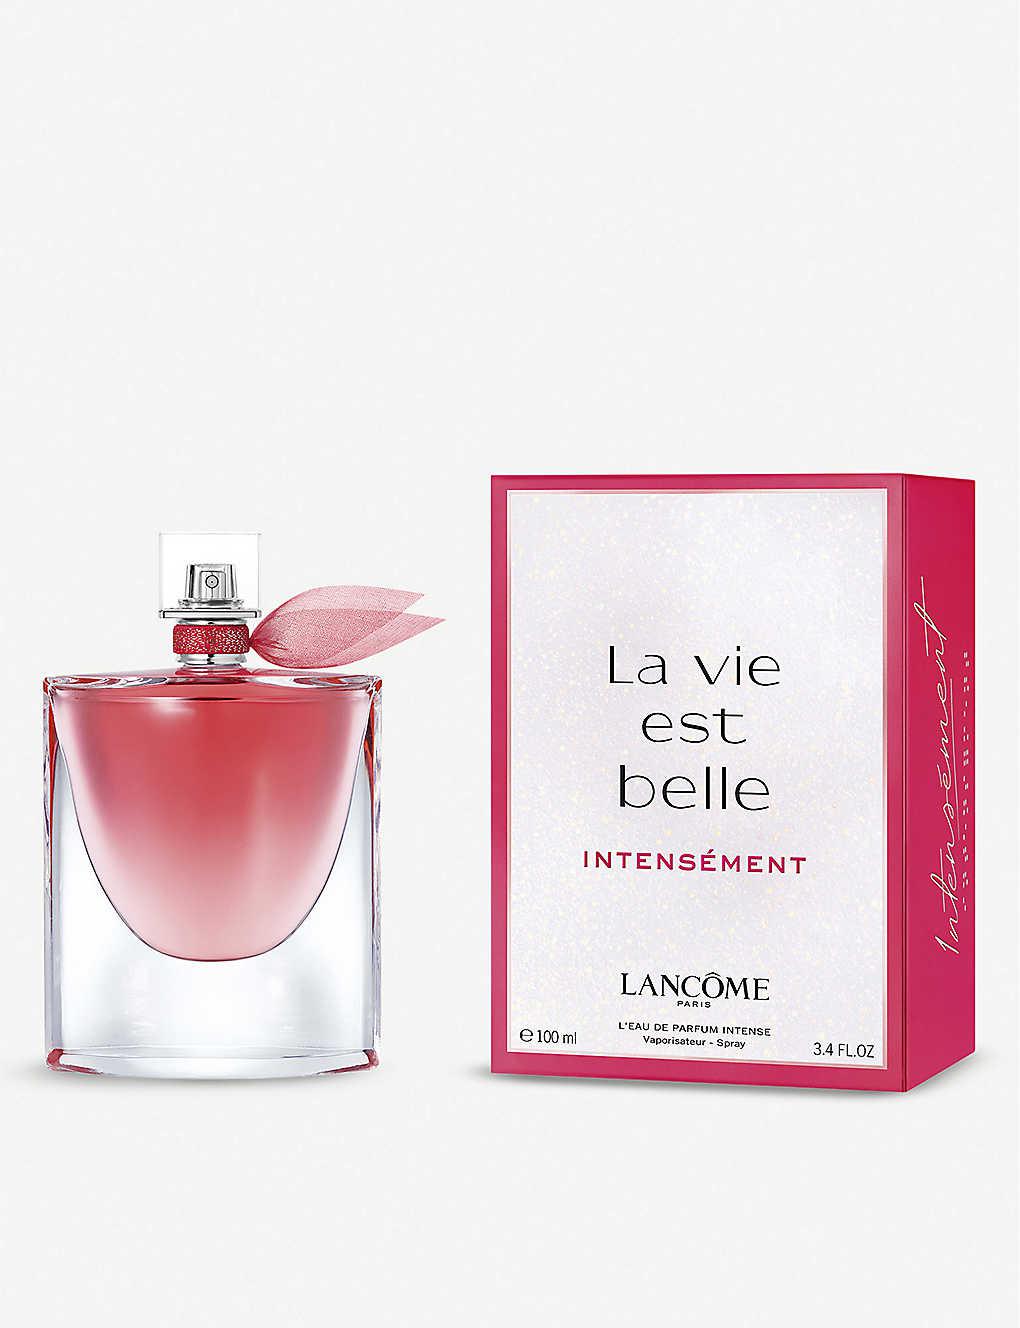 Lancôme La Vie Est Belle Intensement Eau De Parfum